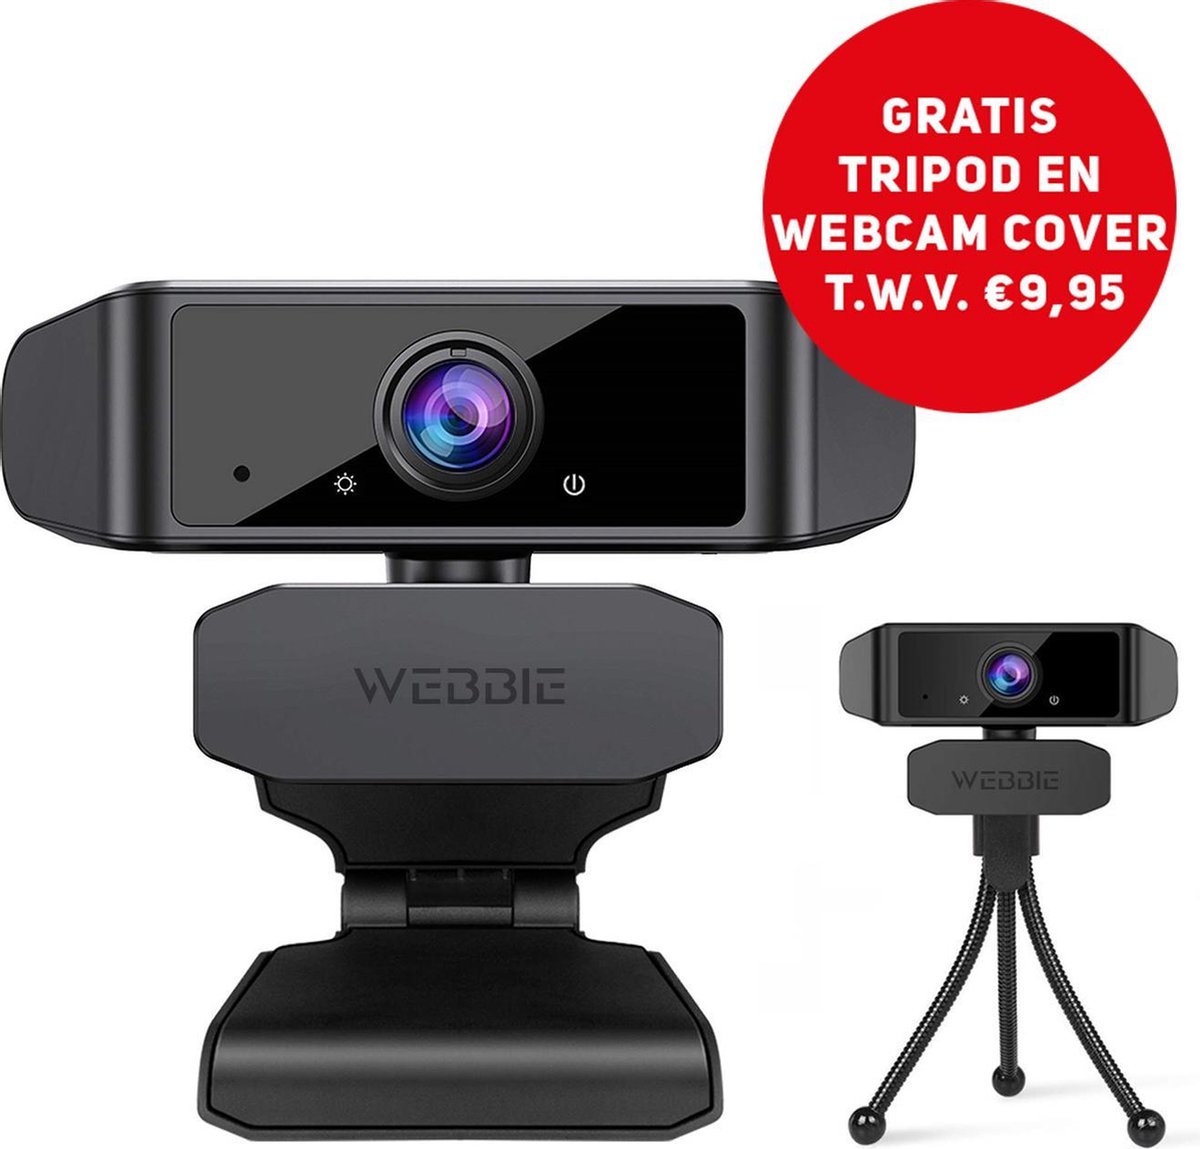 Webbie Webcam Voor PC- Webcam Met Microfoon - Webcams - Thuiswerken - Full HD 1080P Voor Helder Beeld en Geluid - Geschikt voor Windows en Mac - Inclusief Gratis Tripod